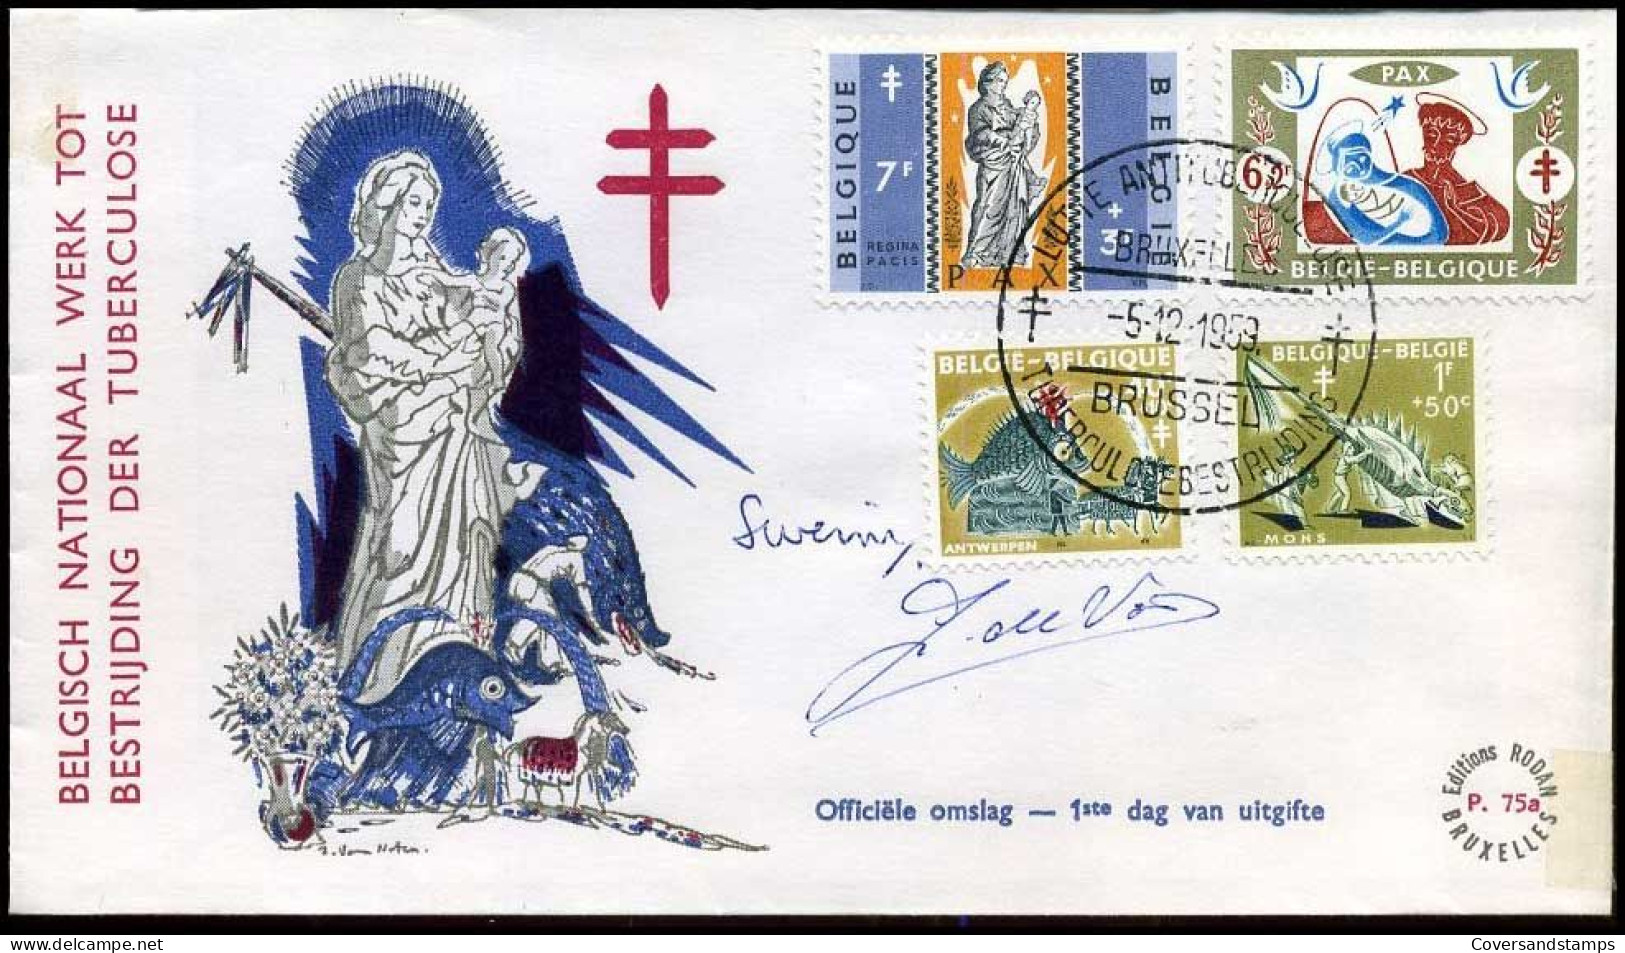 België - FDC -1114/20 Antiteringzegels, Belgische Legenden -- Stempel : Bruxelles-Brussel, Met Handtekeningen - 1951-1960